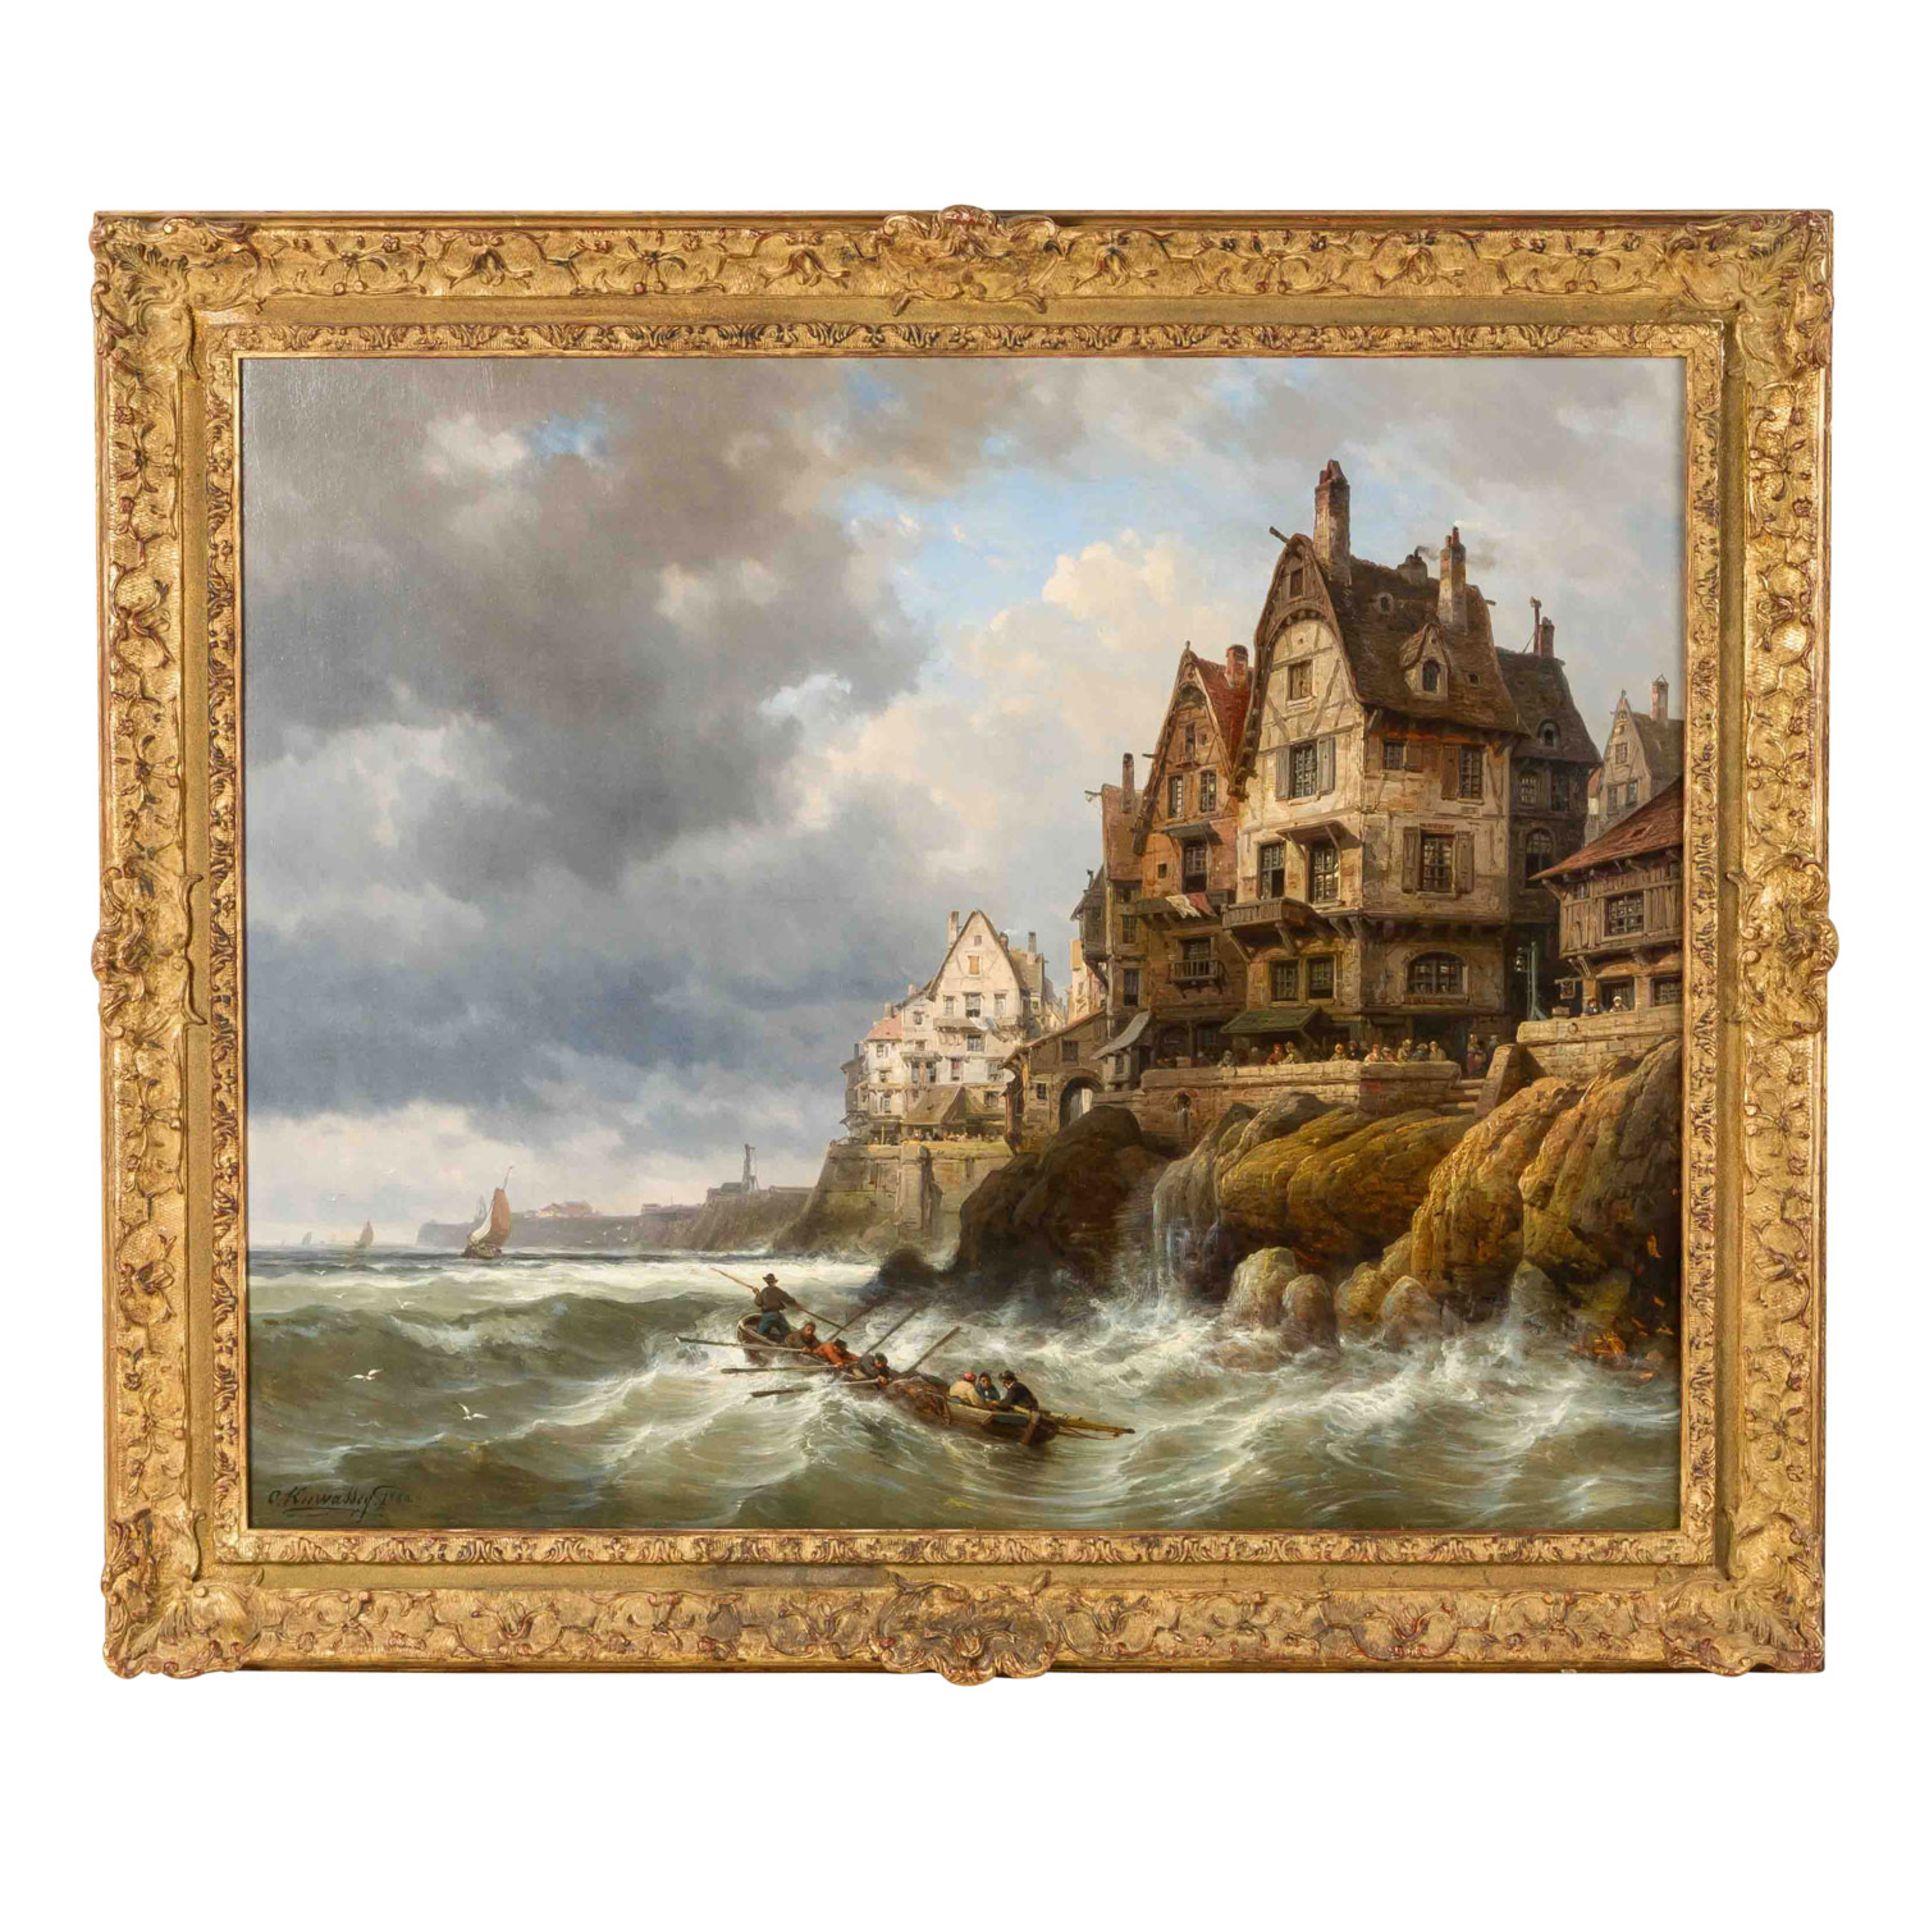 KUWASSEG, CHARLES EUPHRASIE (1833/38 - 1904), "An der Küste", 1880, - Bild 2 aus 4